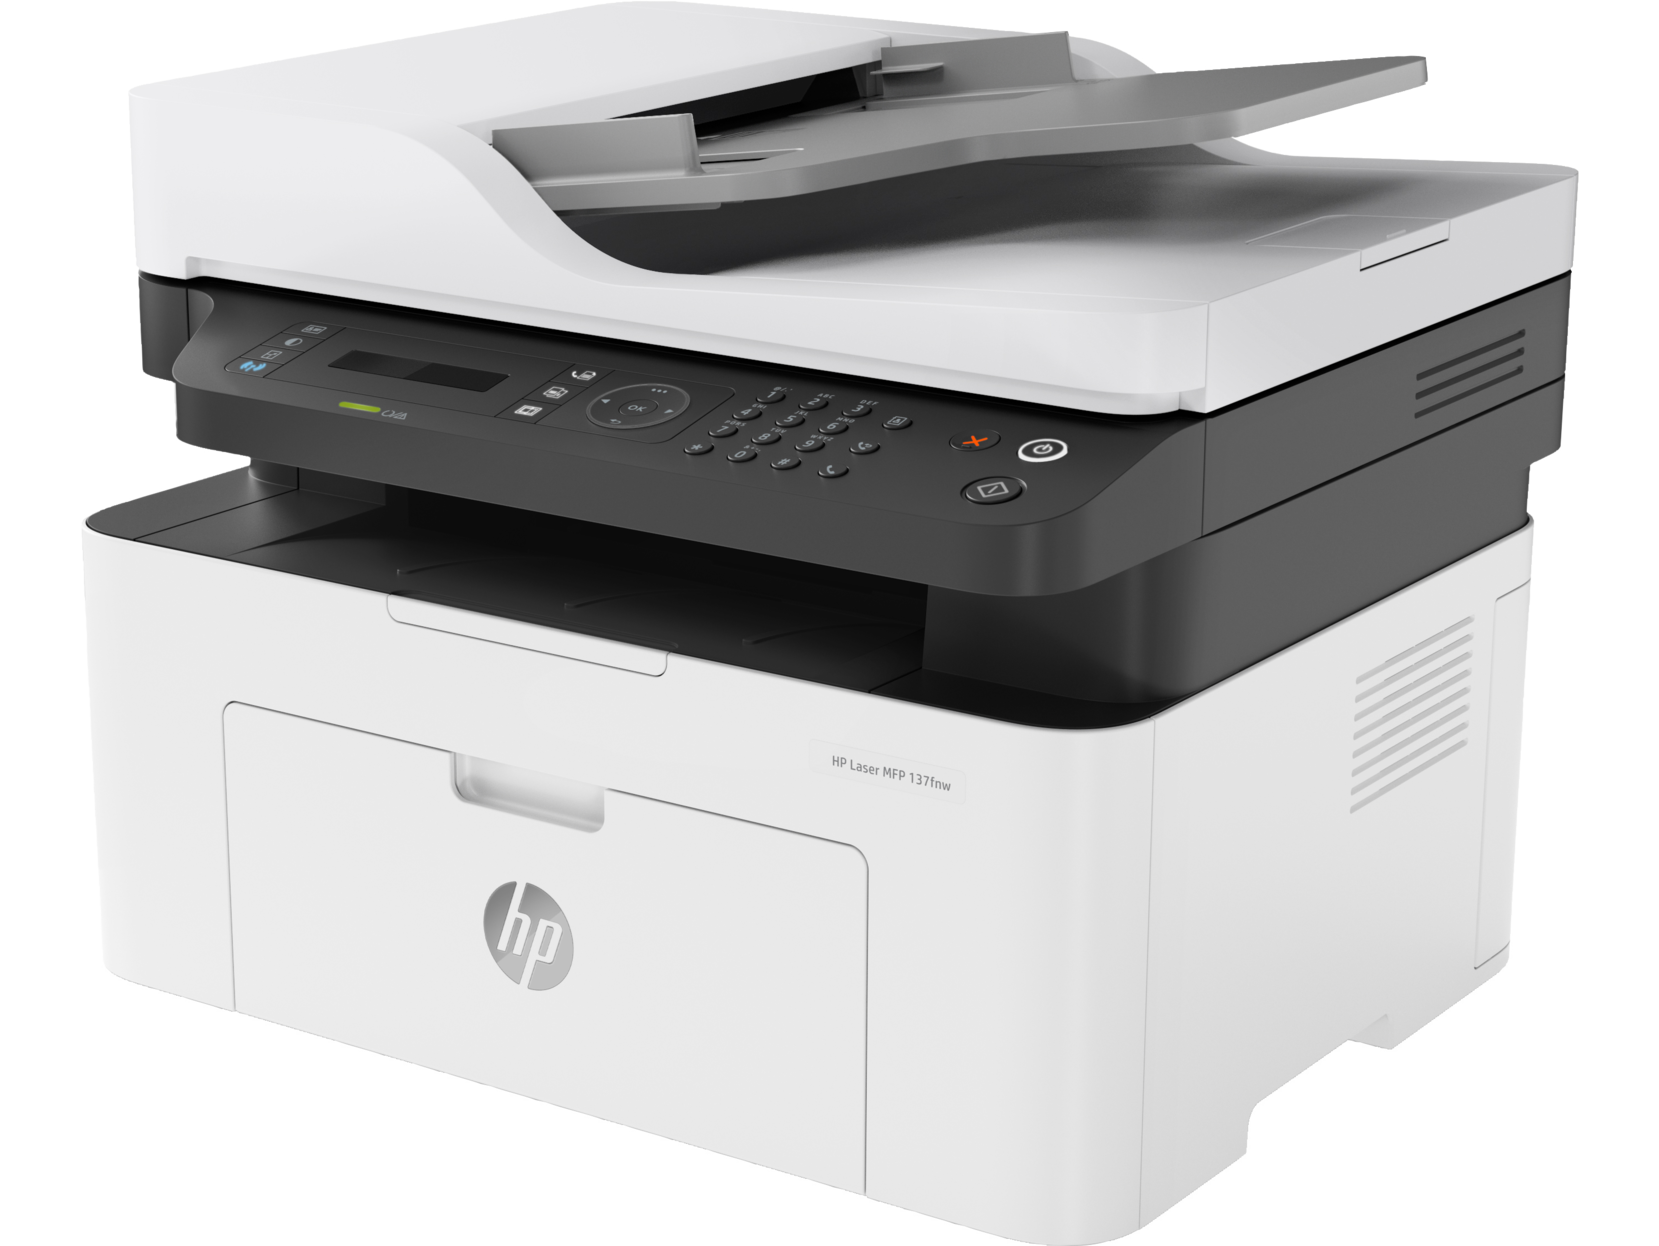 МФУ HP HP Laser MFP 137fnw 4ZB84A A4 Чёрно-белый/печать Лазерная/разрешение печати 1200x1200dpi/разрешение сканирования